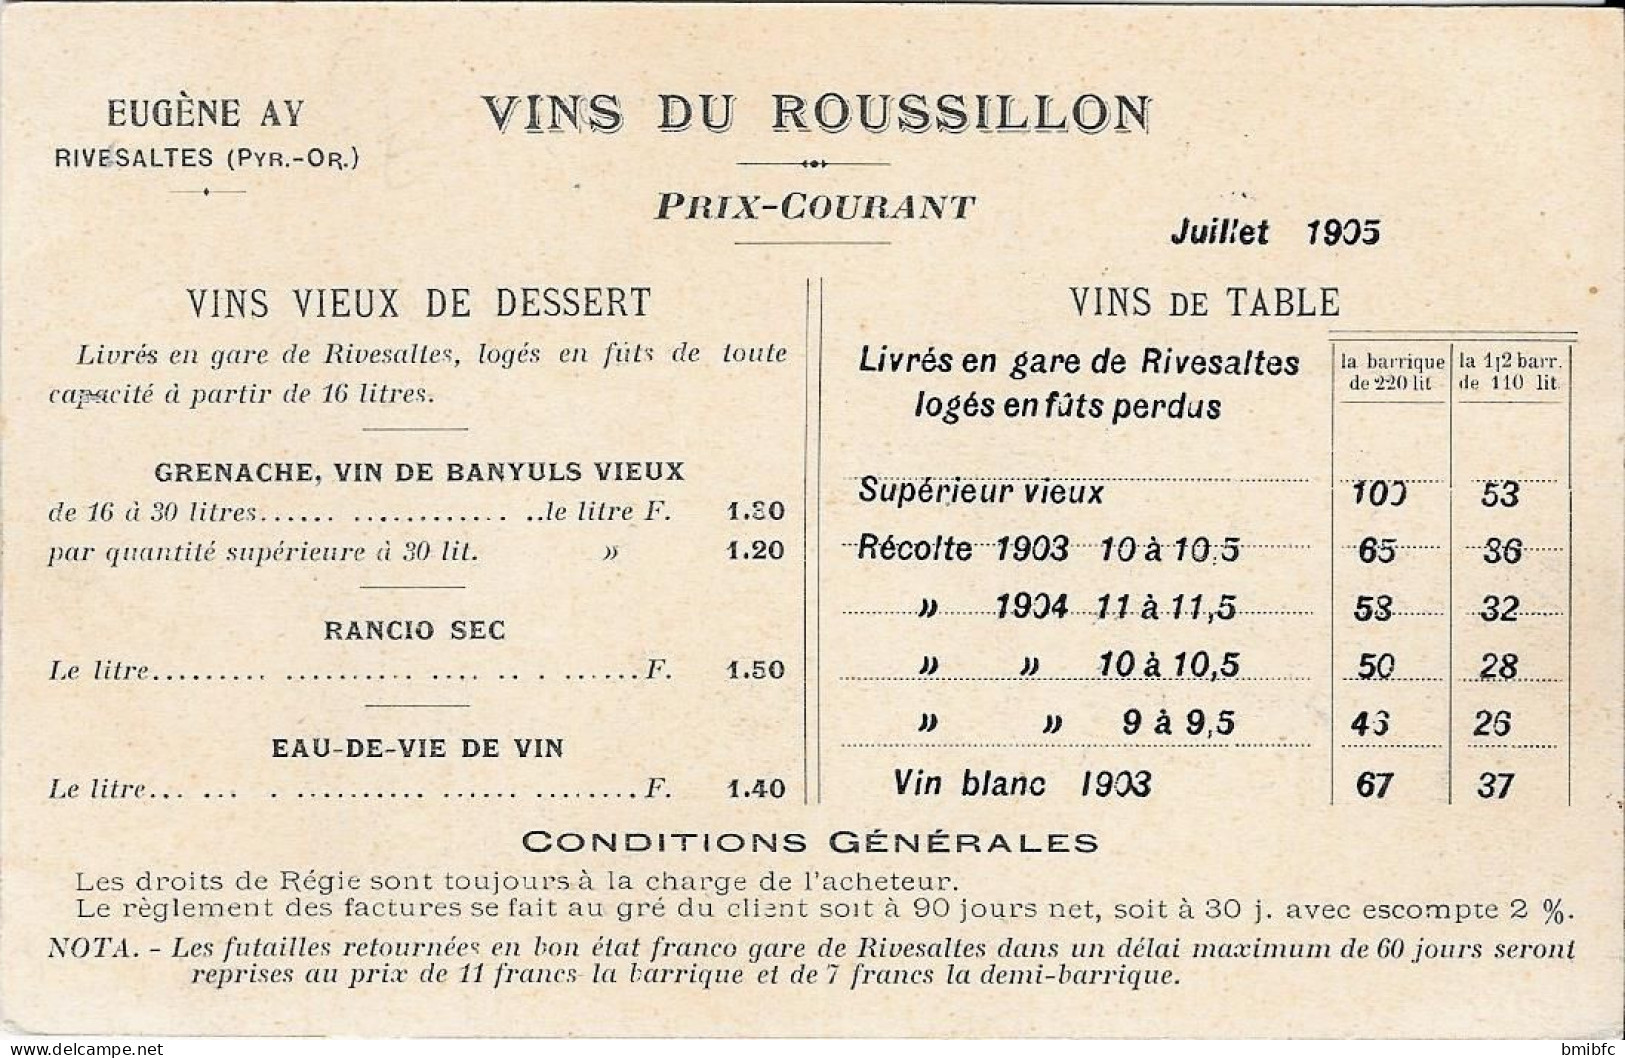 VINS DU ROUSSILLON - EUGÈNE AY. RIVESALTES  - Juillet 1905 - Cliché Eug. Ay. Eglise St Marc à Venise - Rivesaltes